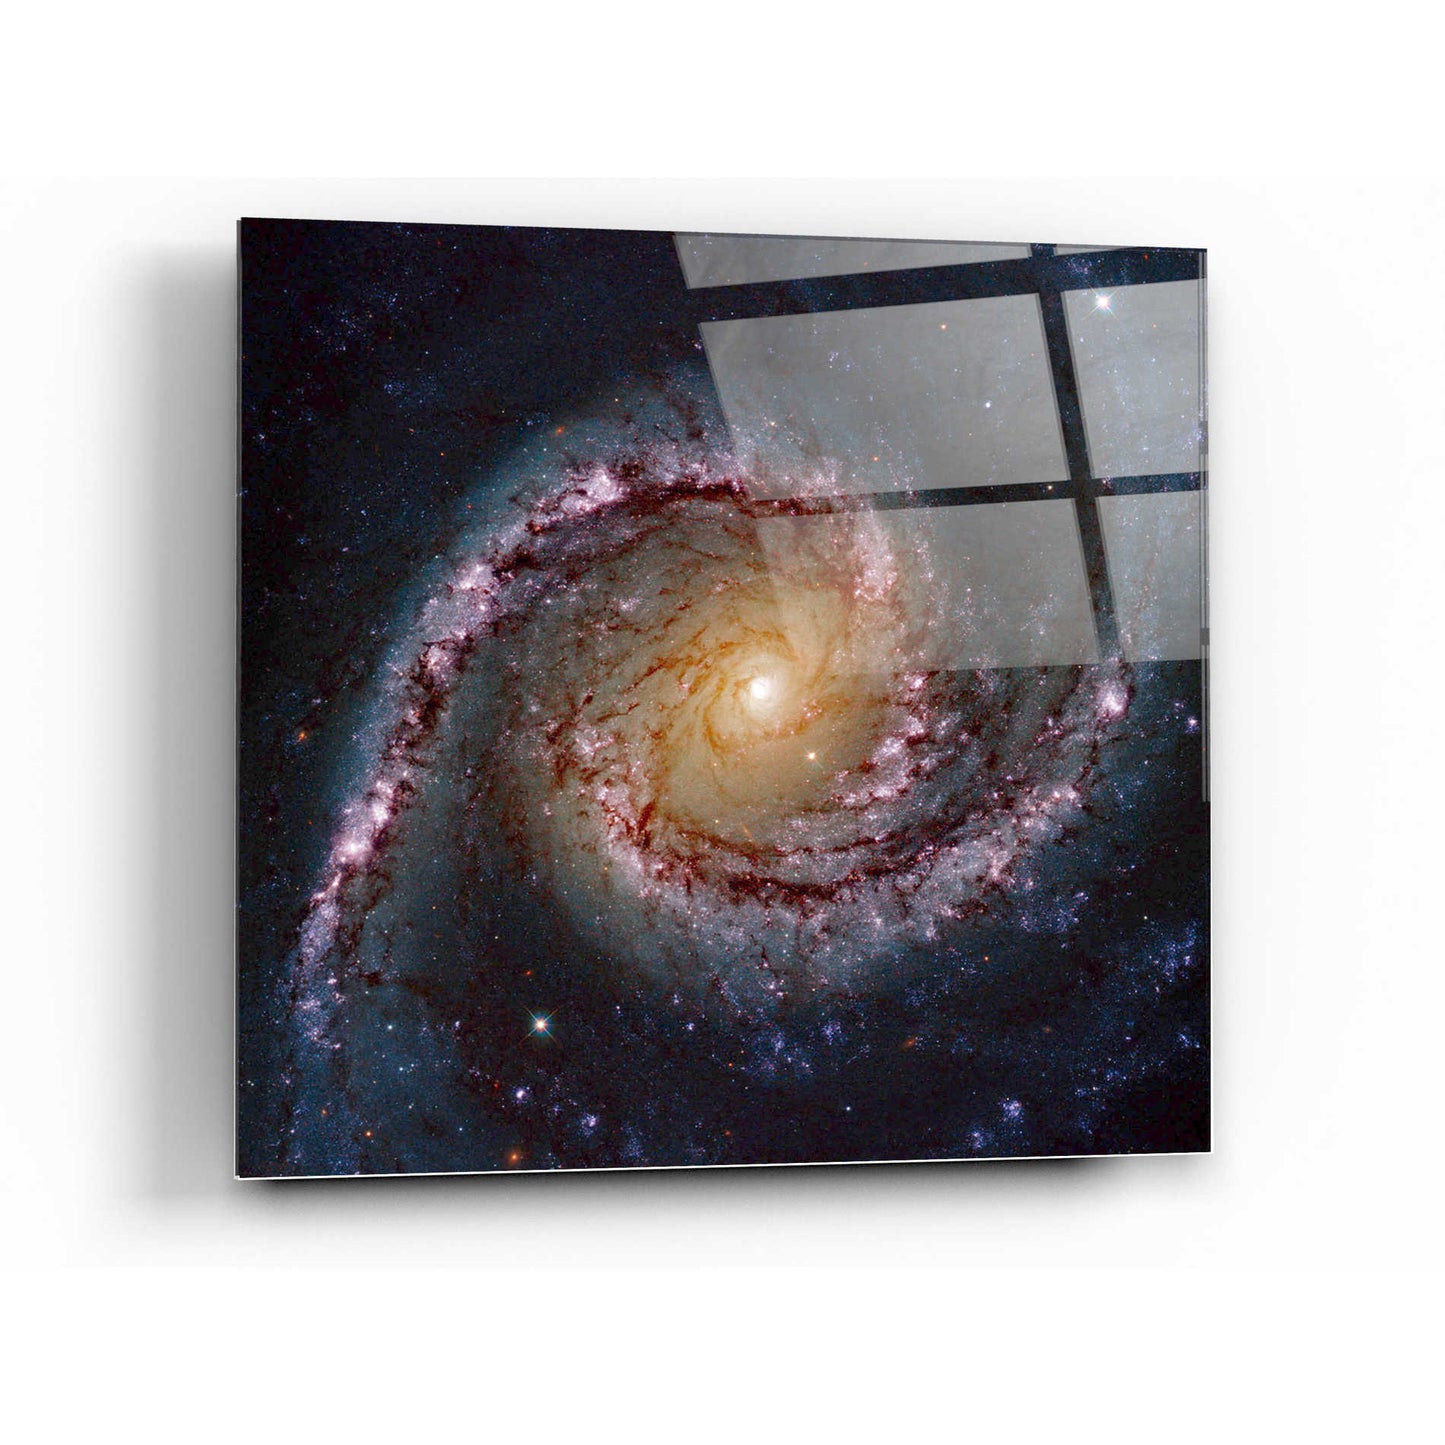 Epic Art "Grand Swirls" Hubble Space Telescope Acrylic Glass Wall Art